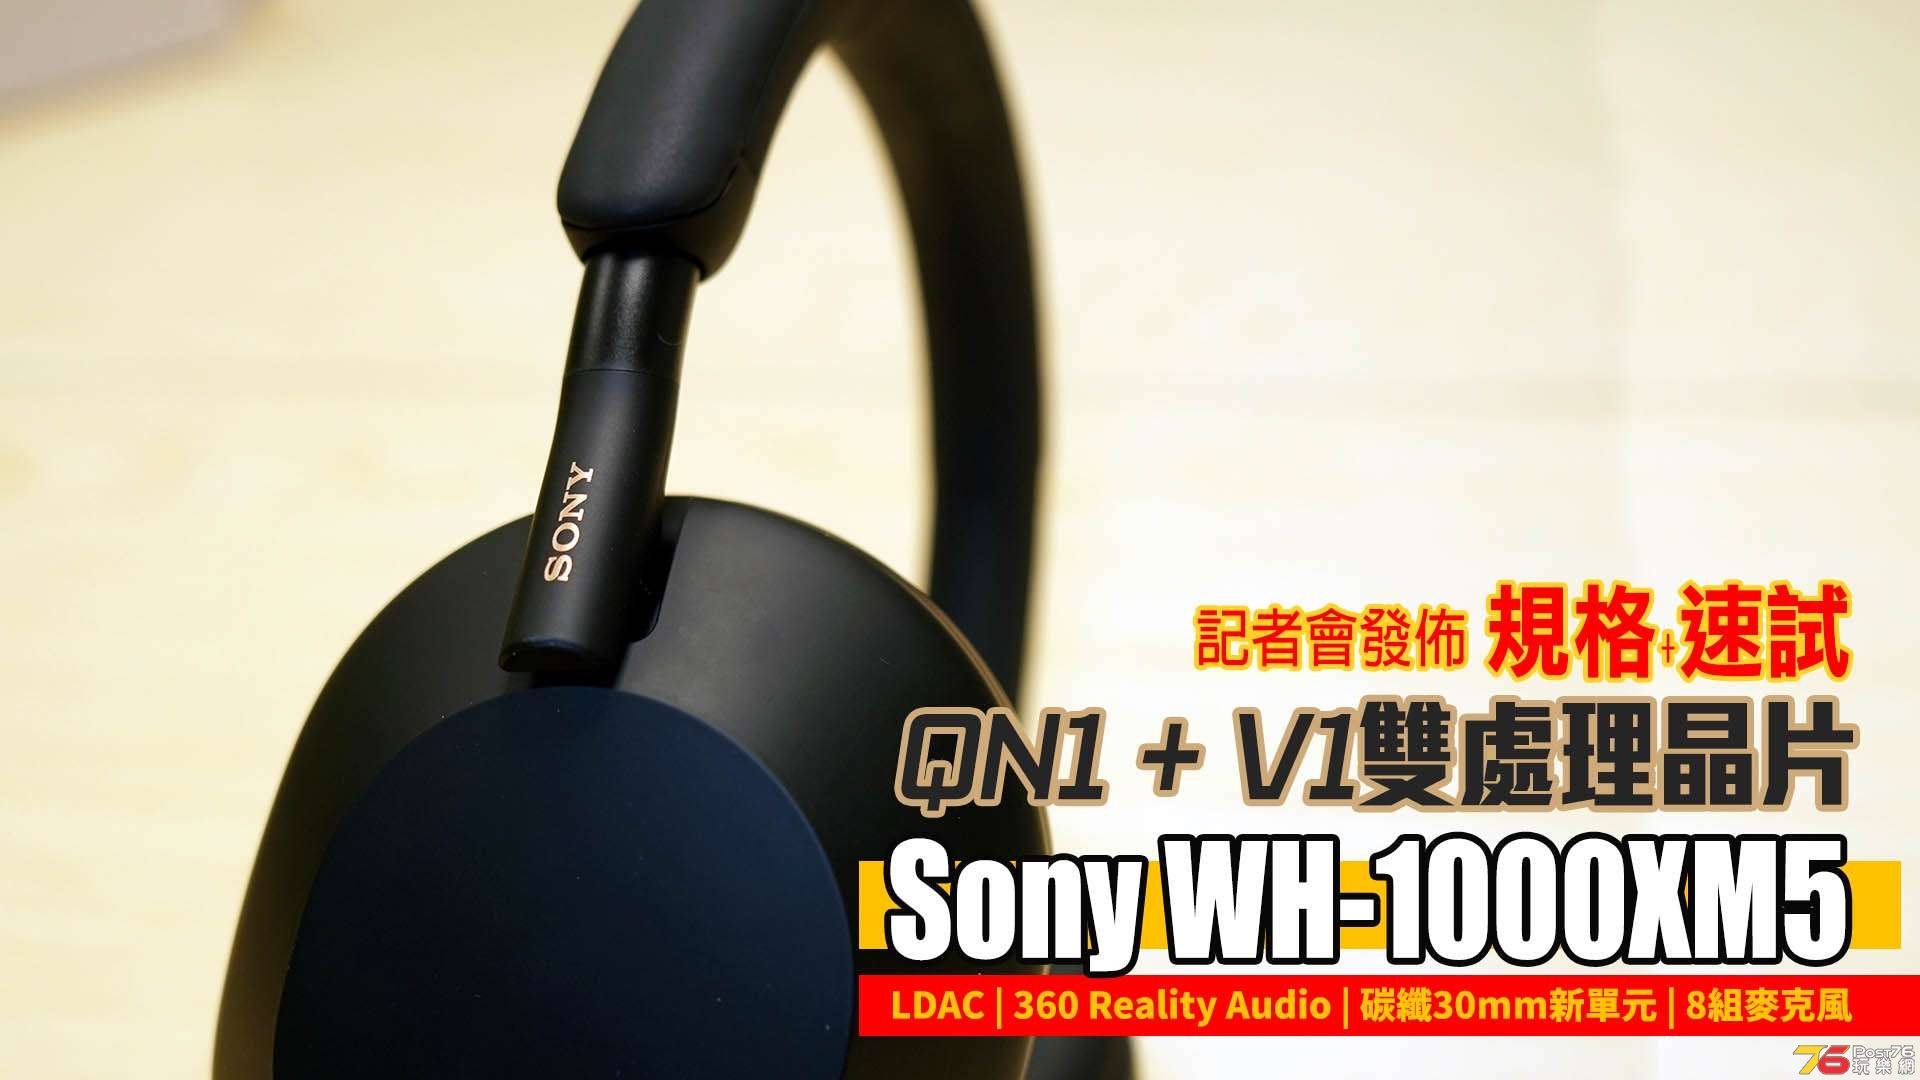 Sony WH-1000XM5 press news forum copy.jpg